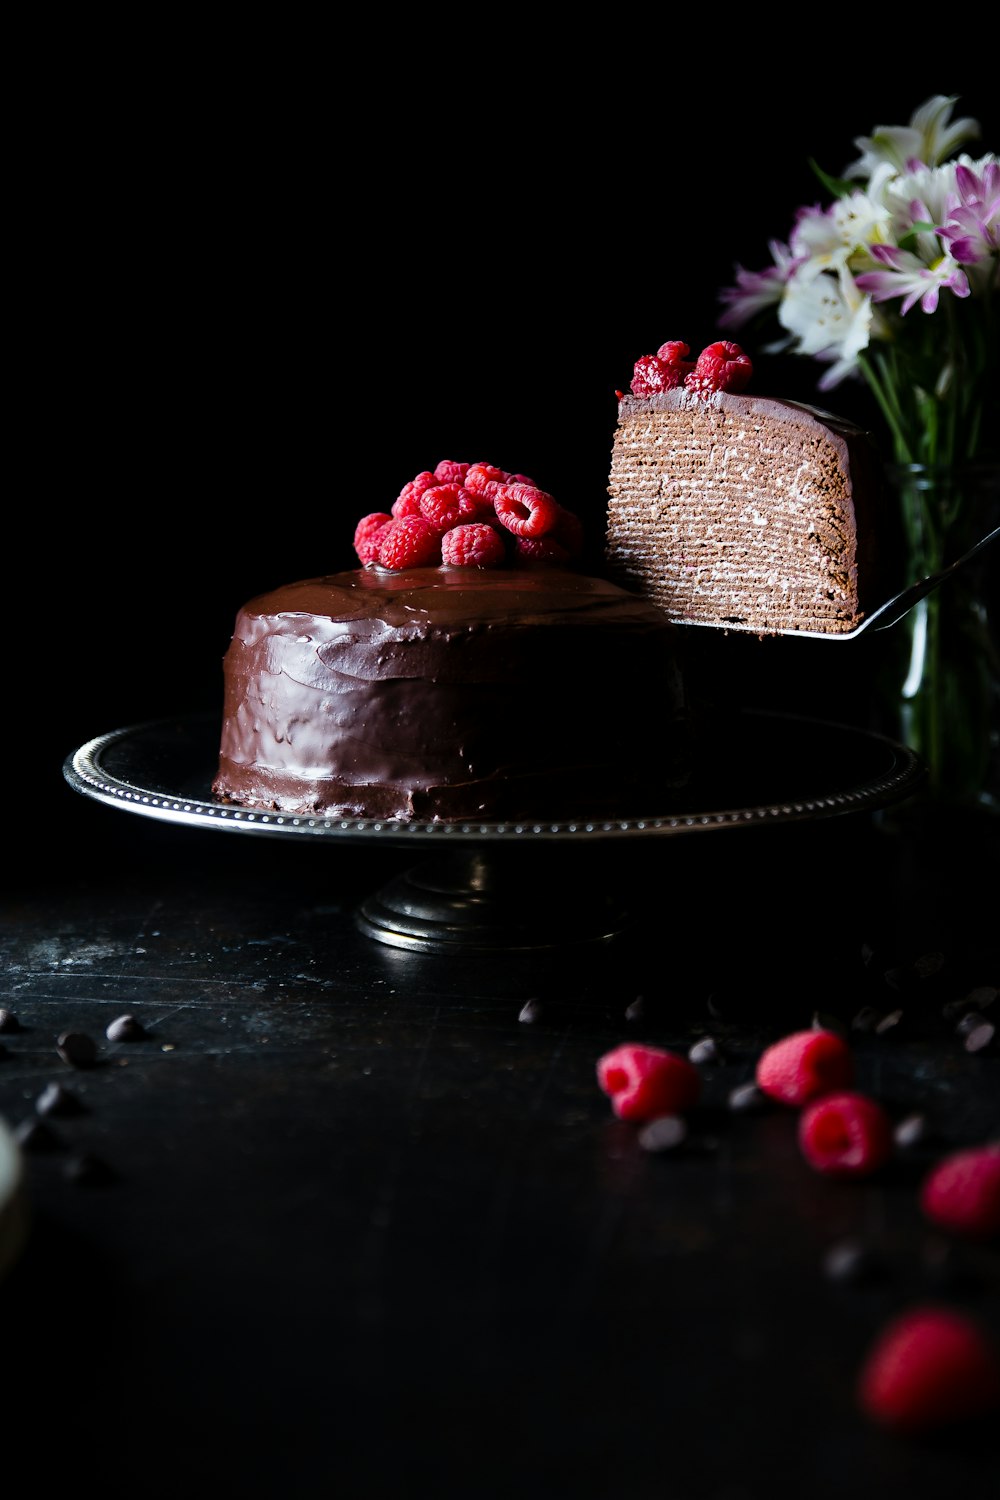 ステンレス製のトレイにチョコレートで覆われたケーキ